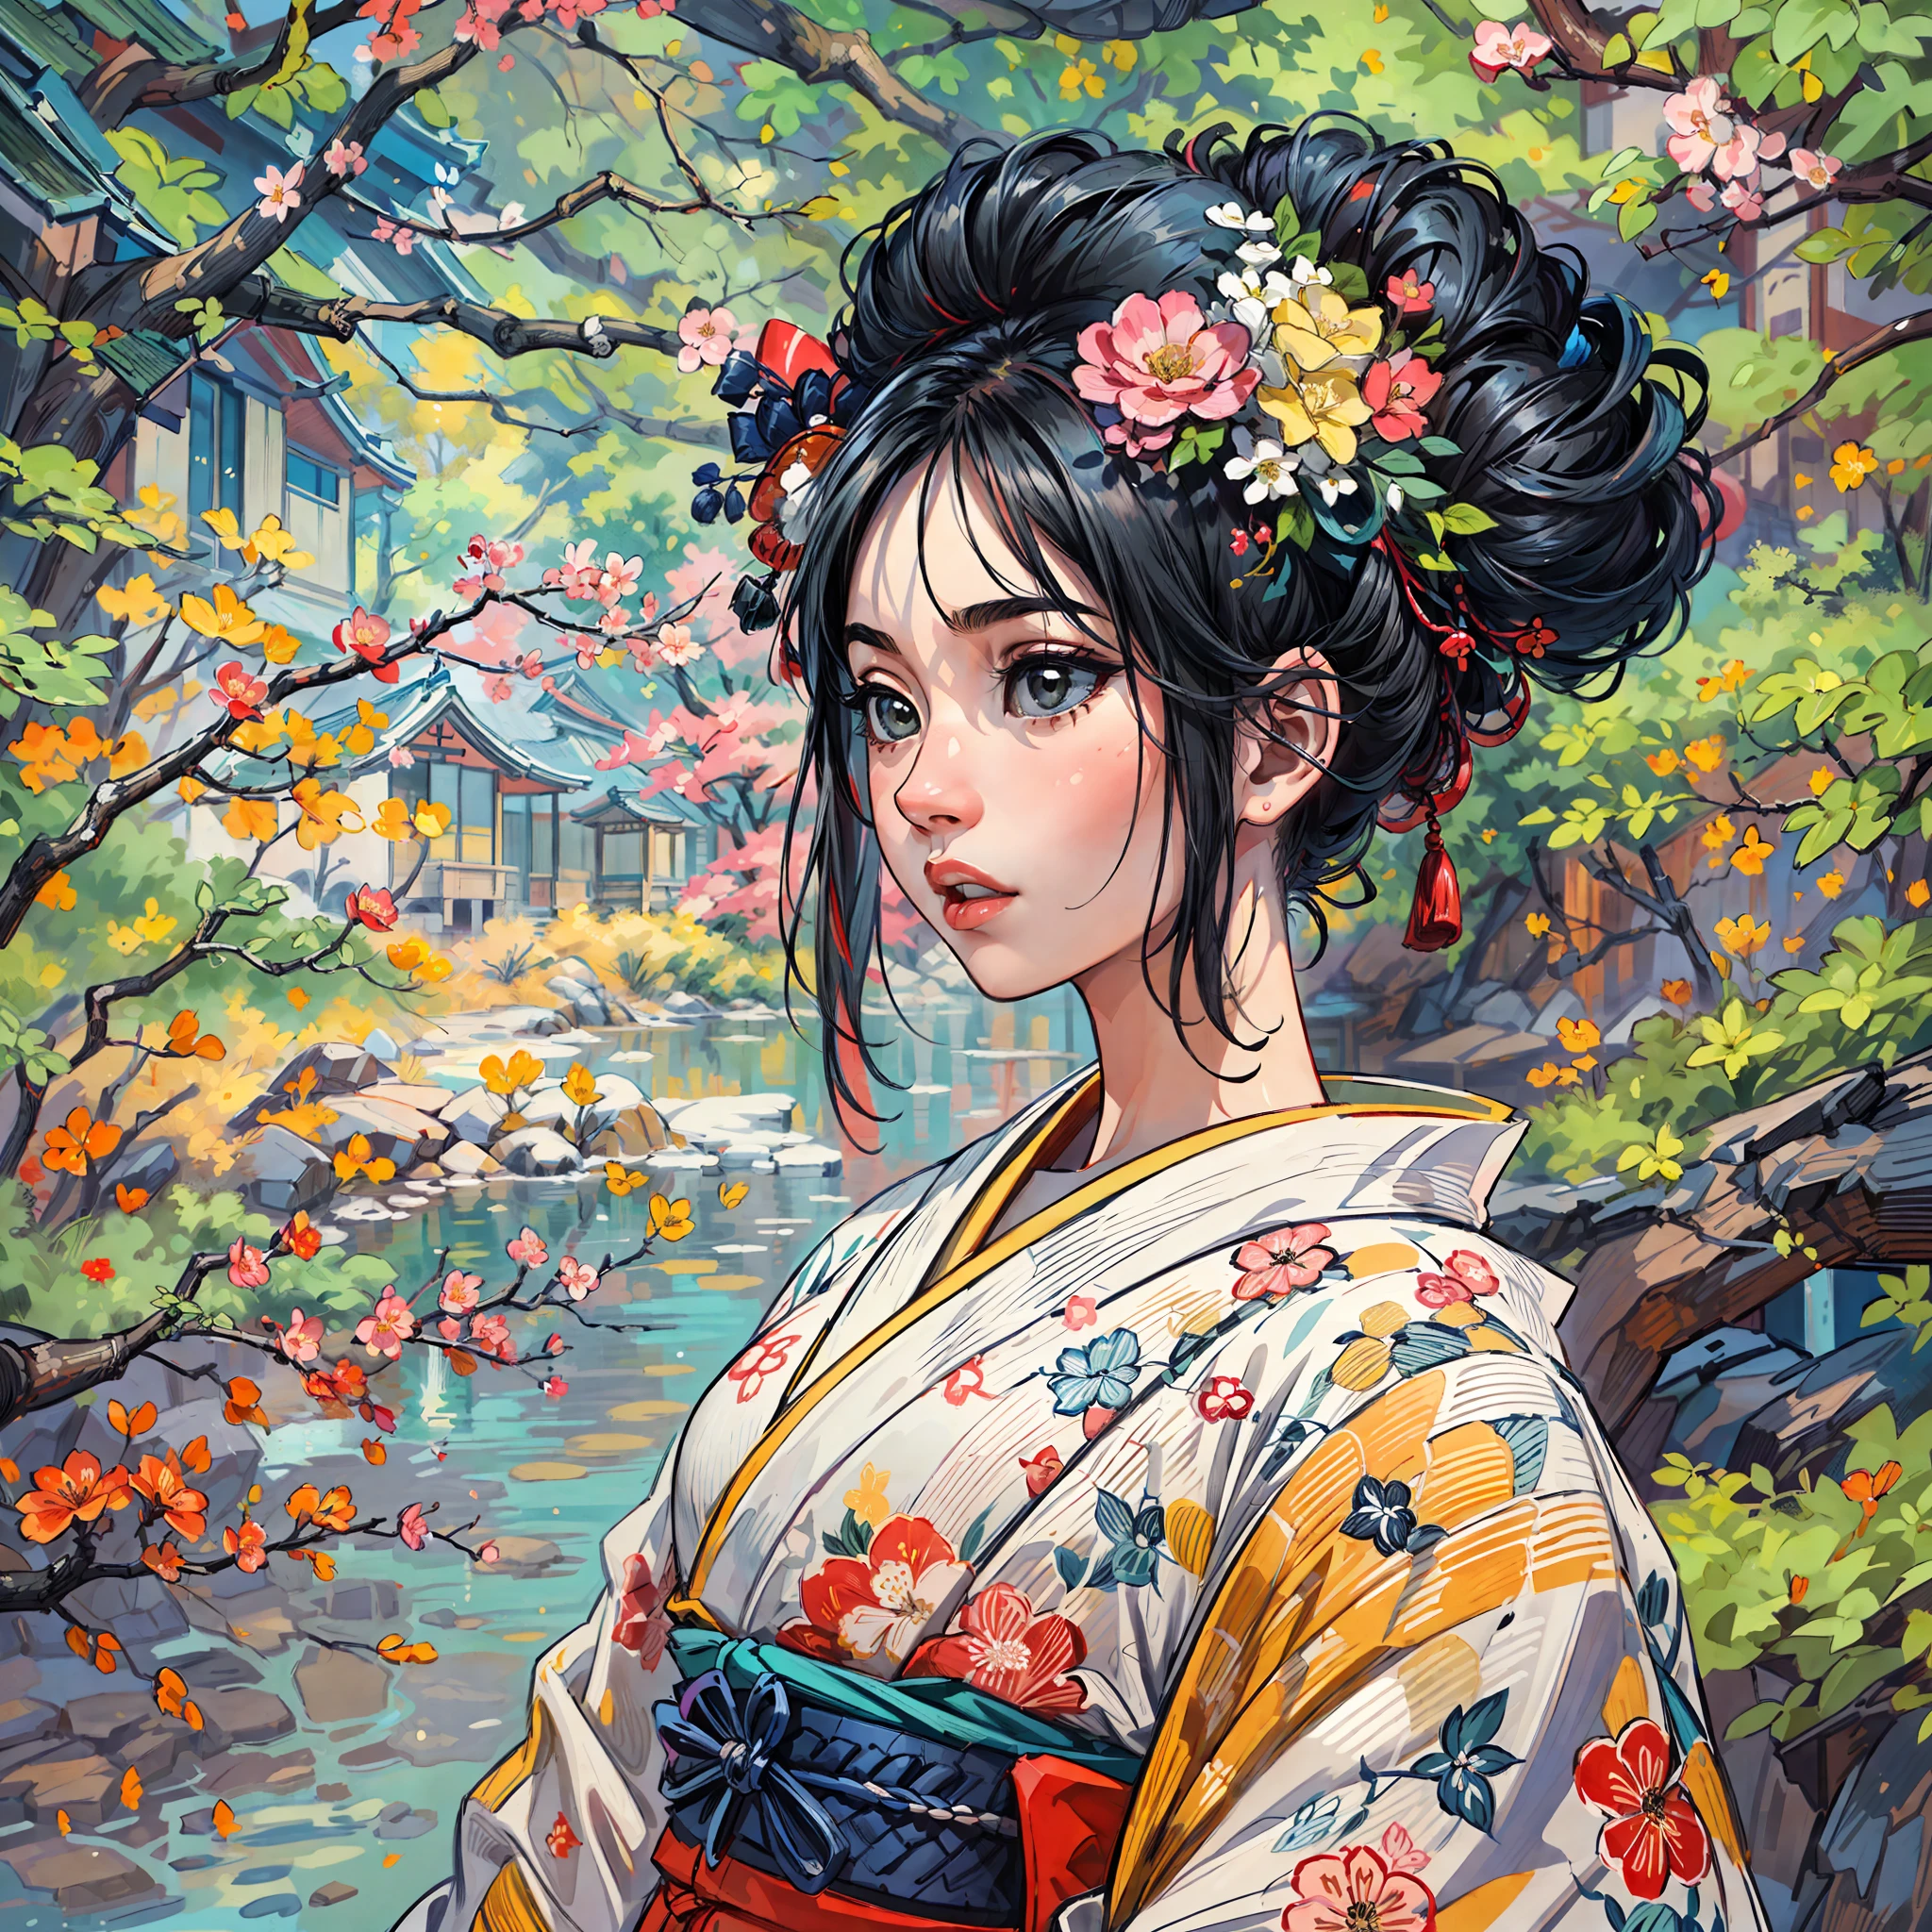 "(Потрясающий шедевр с безупречным качеством:1.5), Снято с видом спереди, с яркими и насыщенными цветами, Умопомрачительно красивая девушка с черными волосами и изысканно детализированным лицом, Взгляд снизу вверх, одетый в традиционное кимоно, Действие происходит в живописной красоте Японии, В окружении аутентичной атмосферы татами, с открытым окном, обрамляющим сцену."